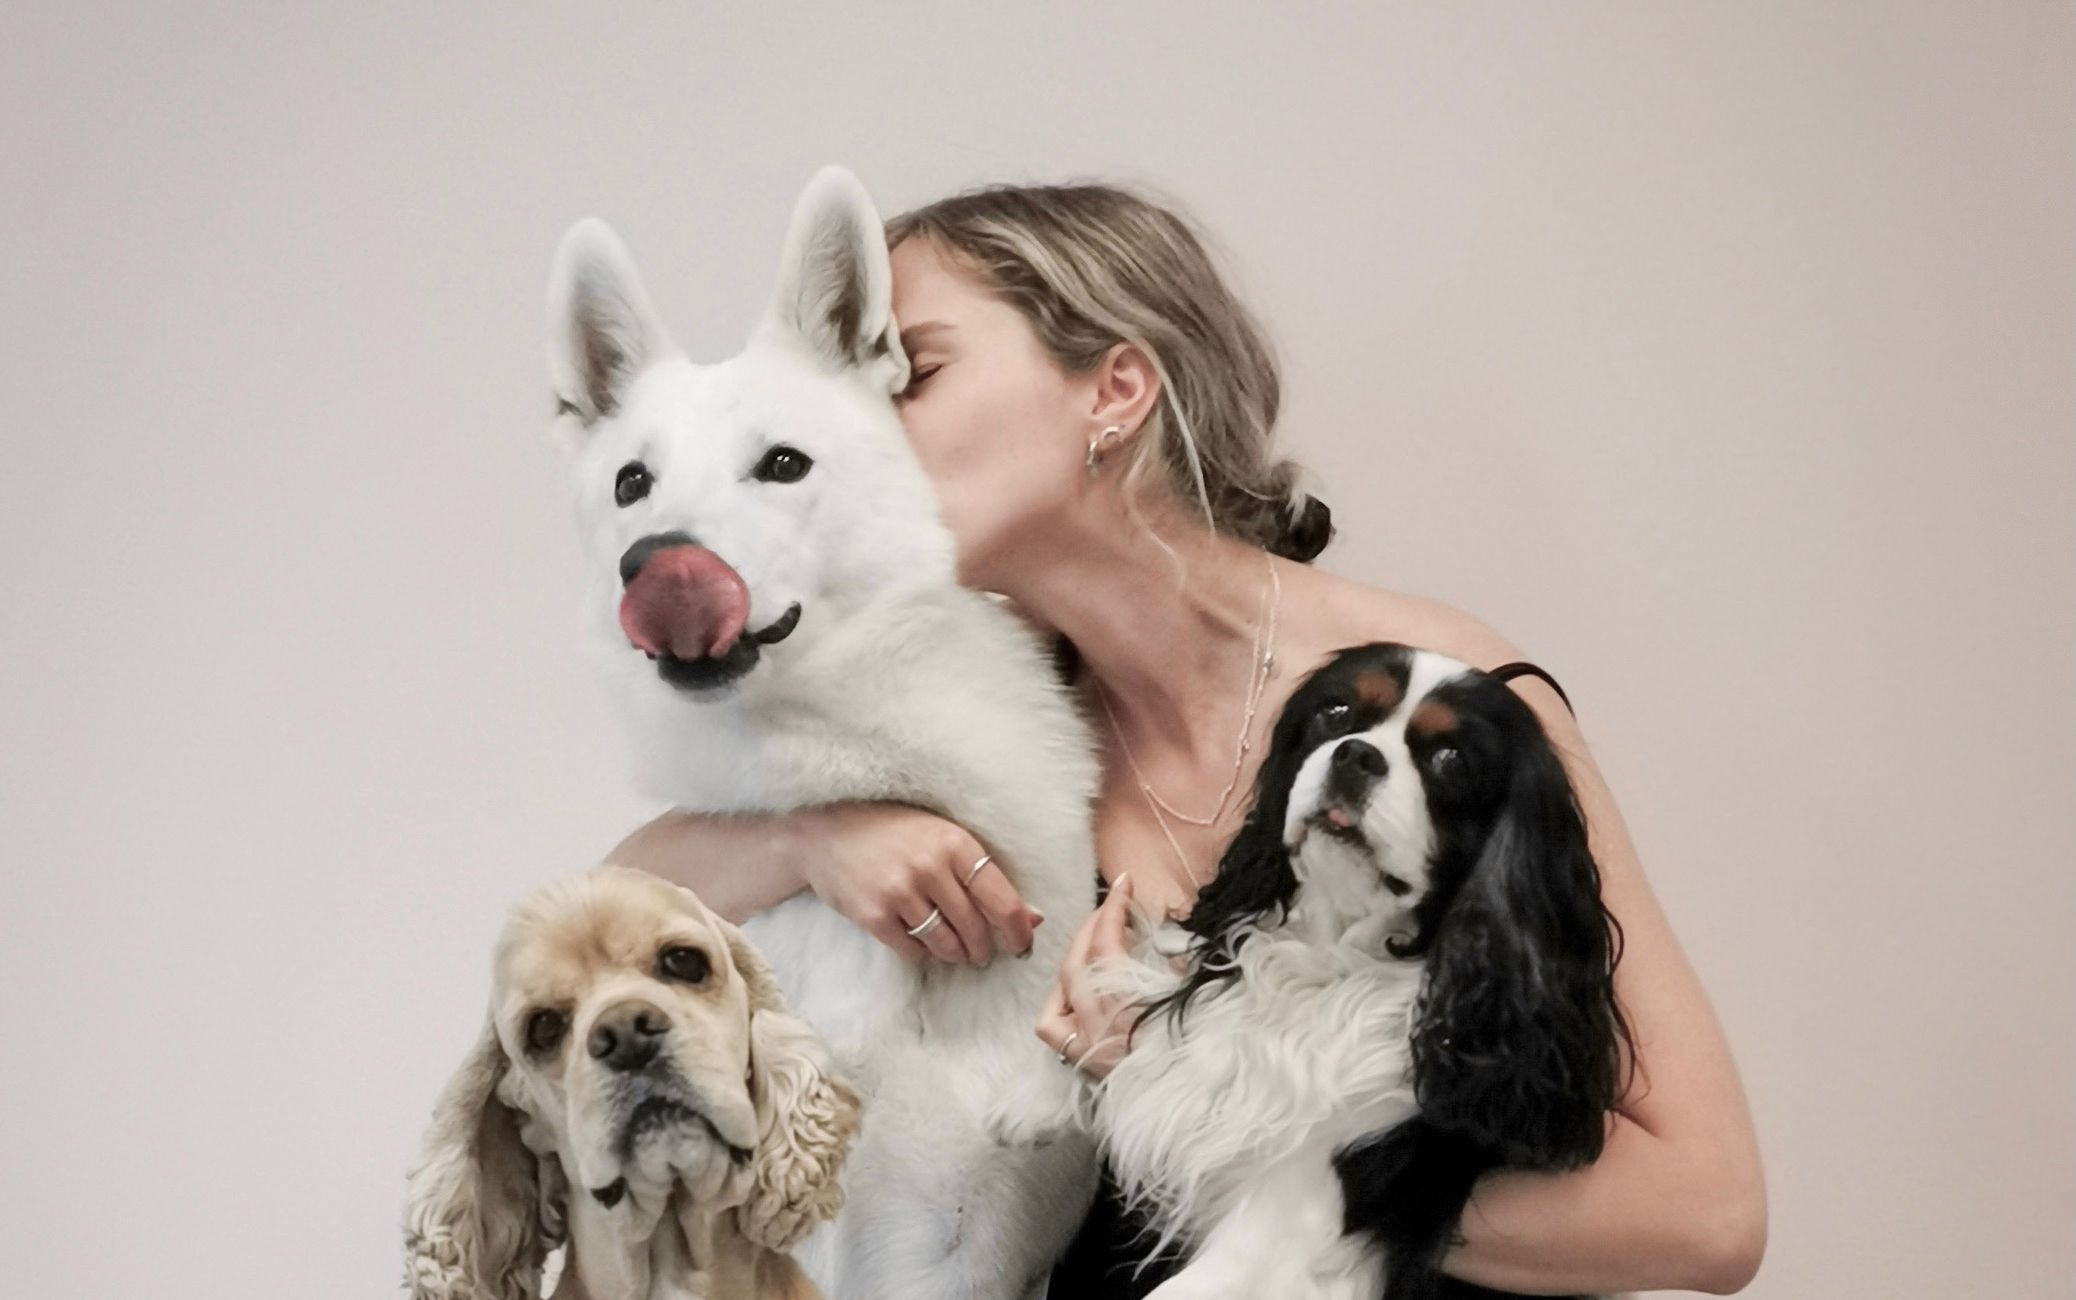 Kati Stimmer pildil koos enda koera šveitsi valge lambakoera Lohega (5a) ja kaasgroomeri Aileni koerad - vasakul ameerika kokker Marshall (6a) ja Cavalier King Charles spanjel Nuudel (8a).